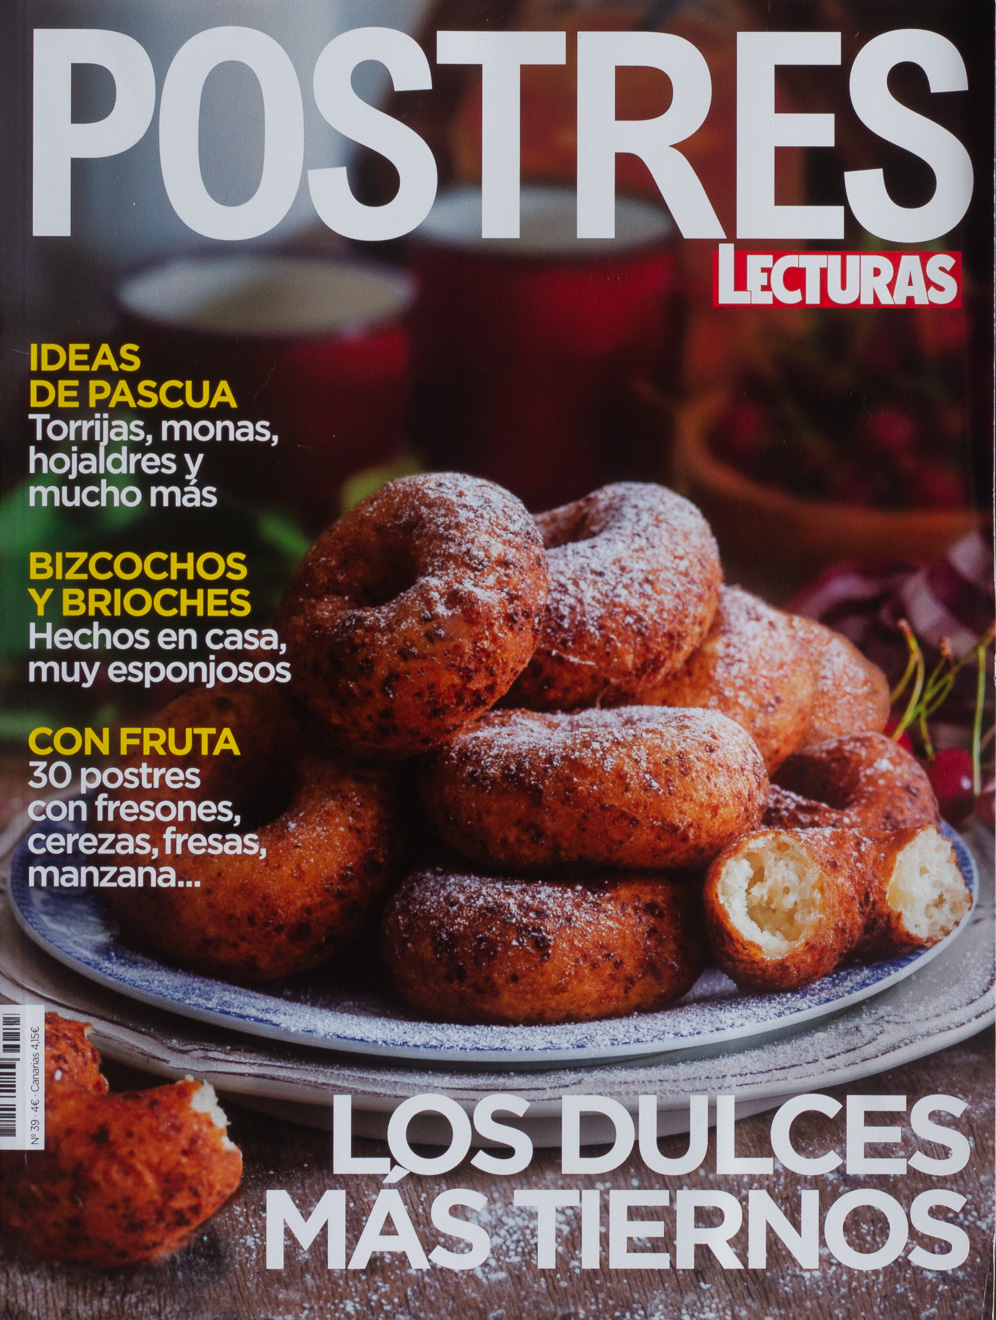 Estilismo Culinario y fotografía gastronómica. Home Economist España. Leire Gamboa Food Styler.